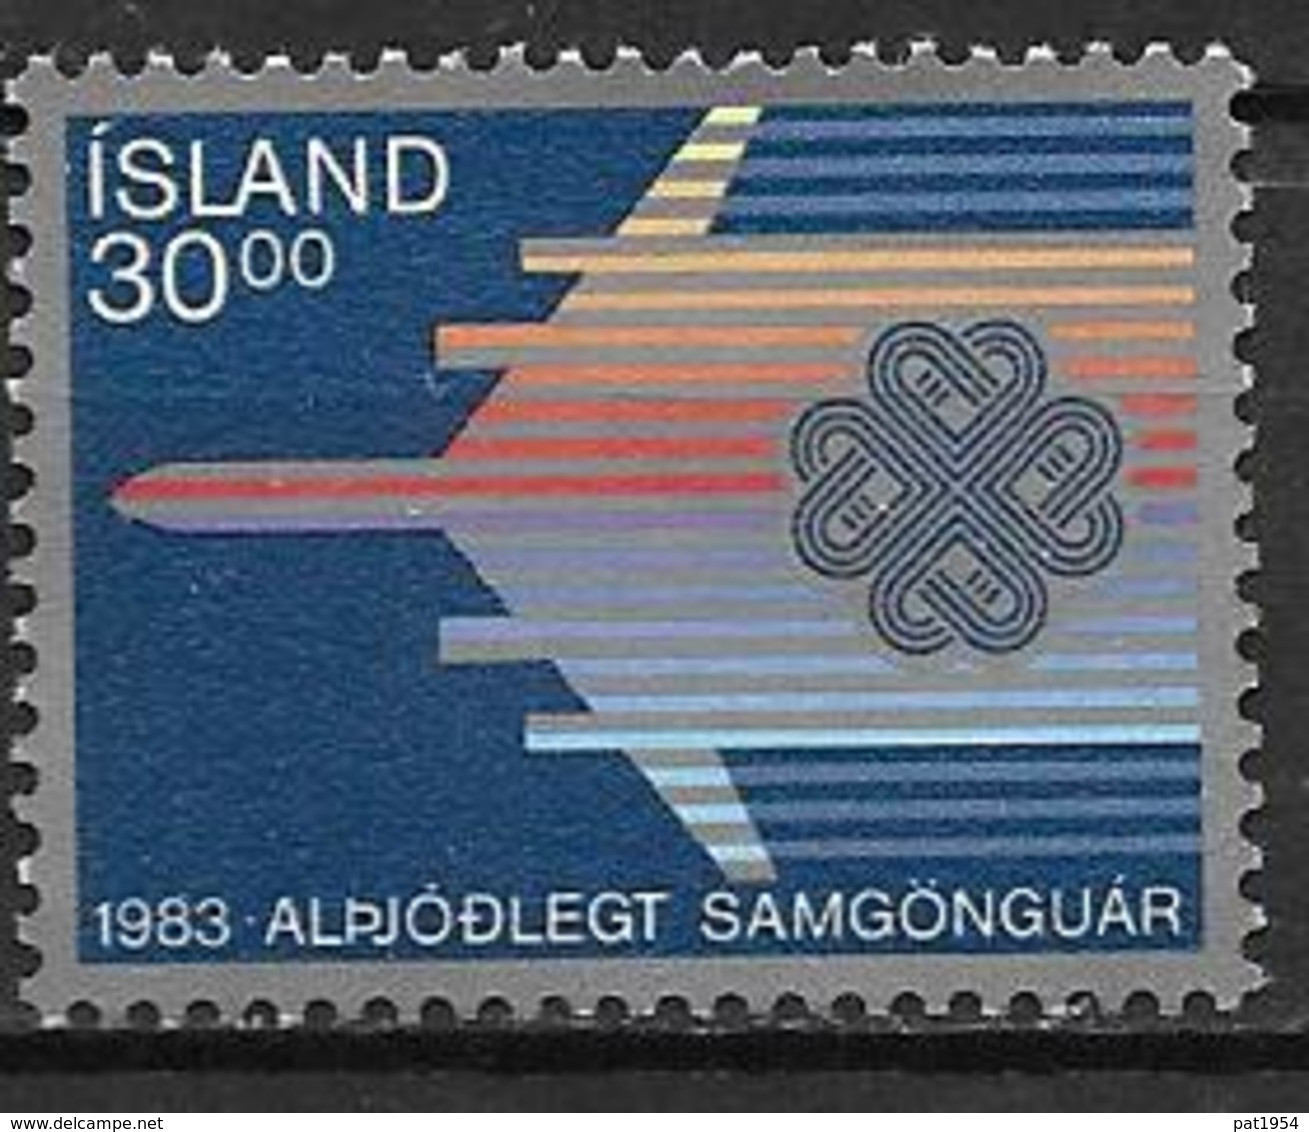 Islande 1983 N° 558 Neuf Année De Communications, Avion - Ongebruikt